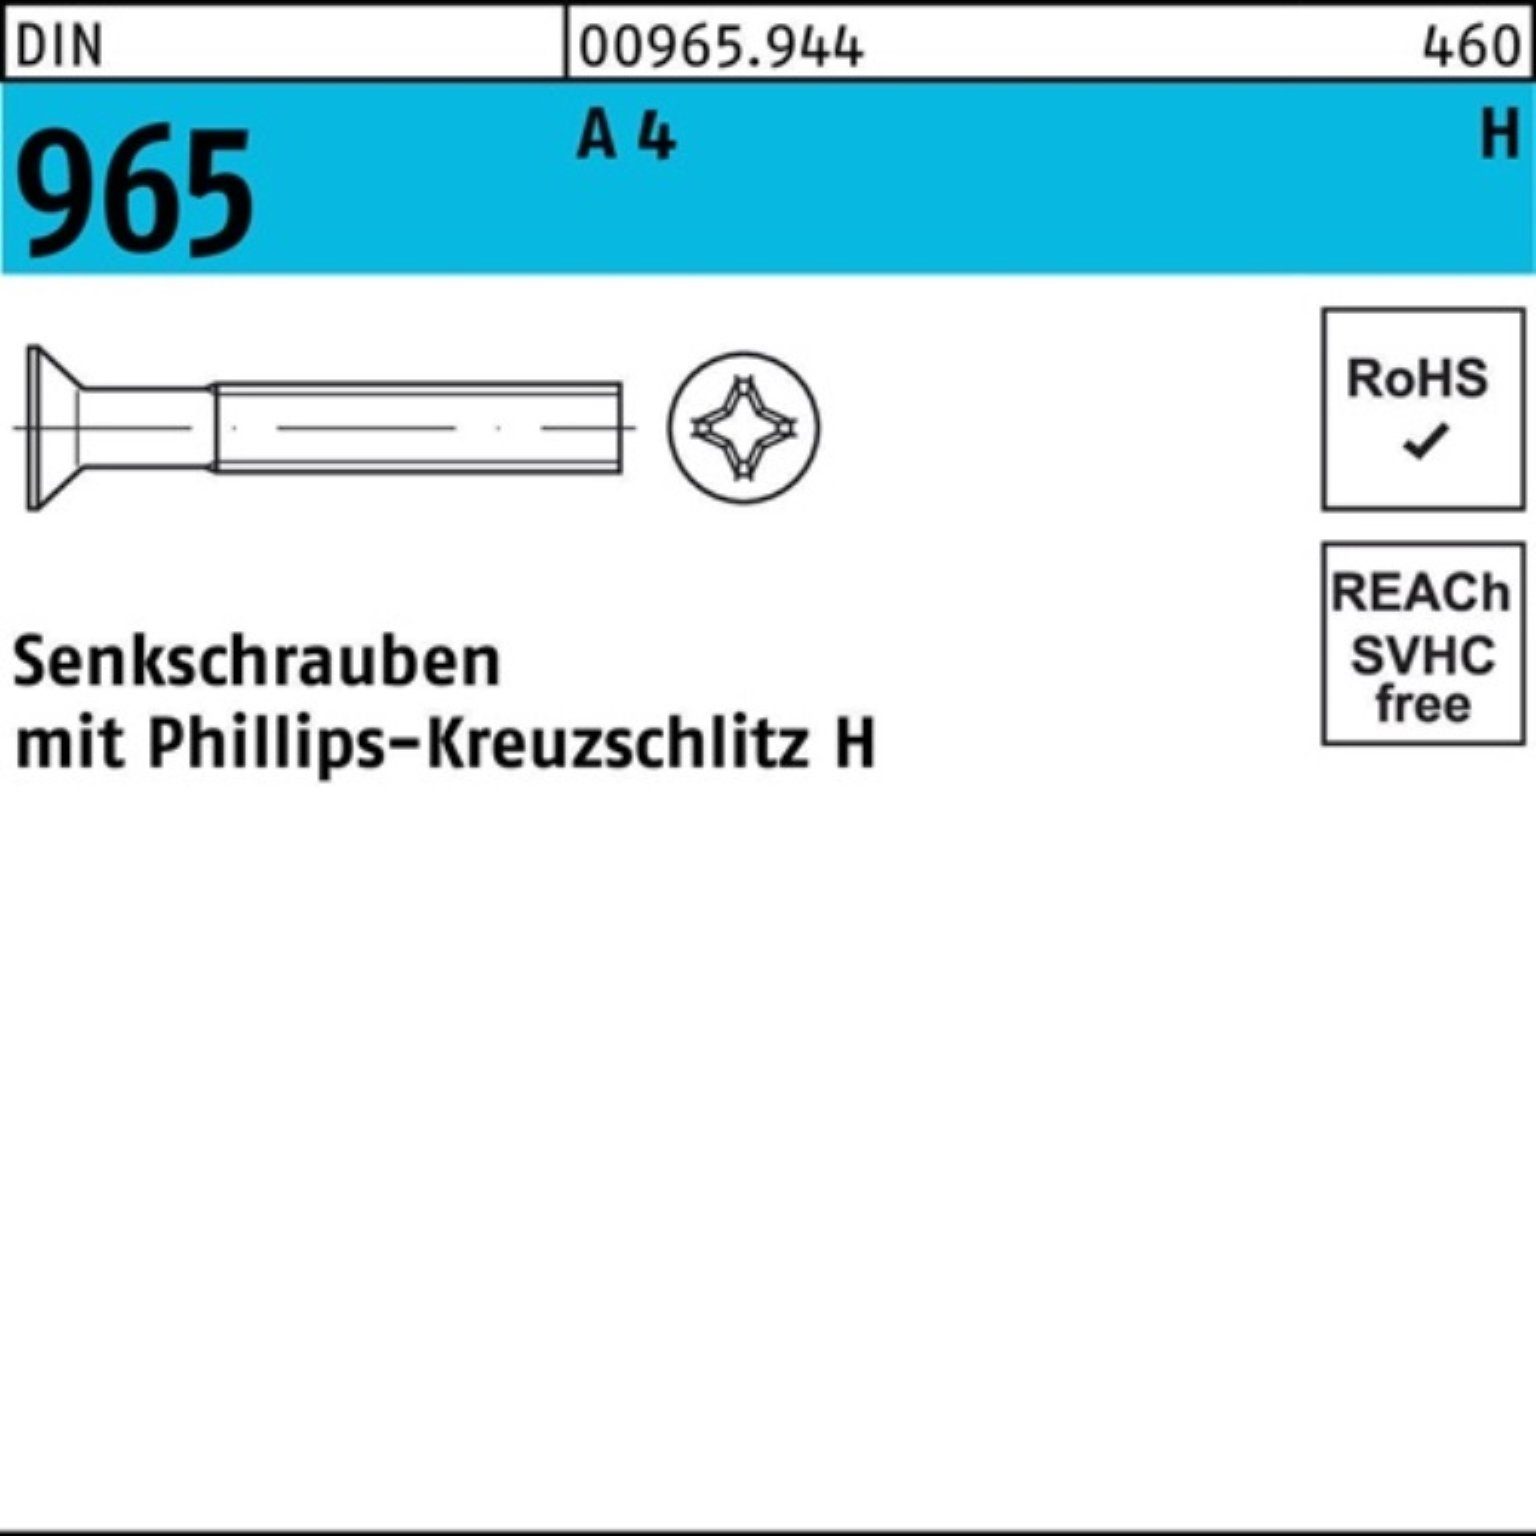 A Senkschraube Stück 965 DIN 35-H 4 100 M10x Senkschraube Reyher 965 PH Pack A 100er DIN